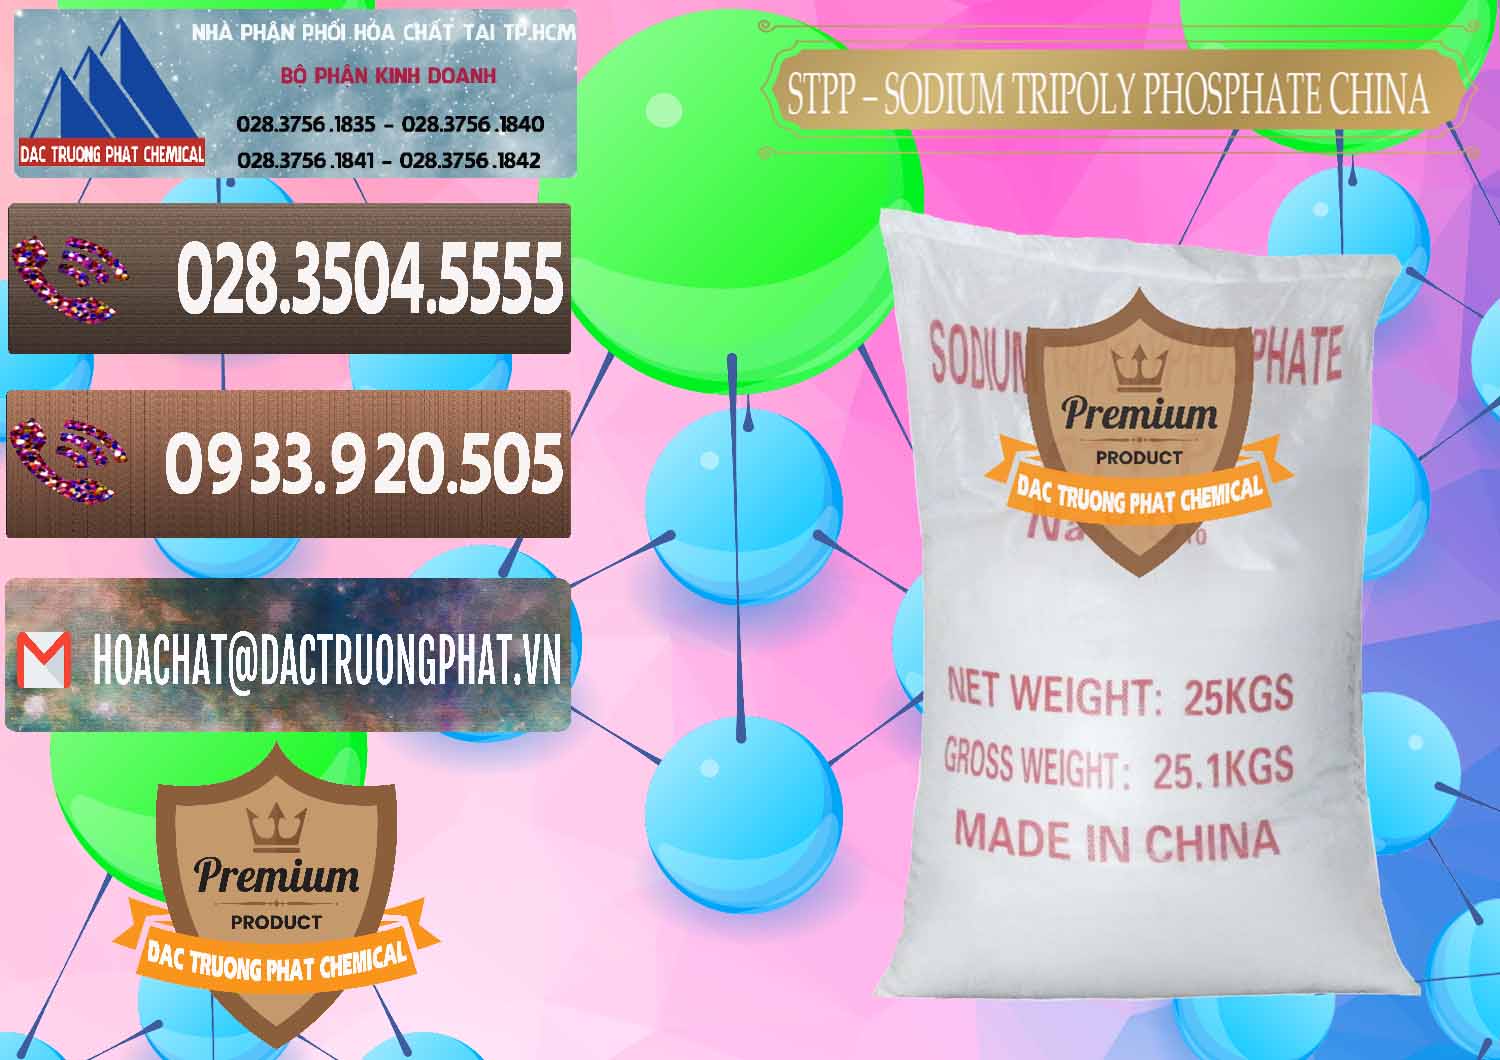 Cty phân phối ( bán ) Sodium Tripoly Phosphate - STPP 96% Chữ Đỏ Trung Quốc China - 0155 - Đơn vị chuyên nhập khẩu - phân phối hóa chất tại TP.HCM - hoachatviet.net